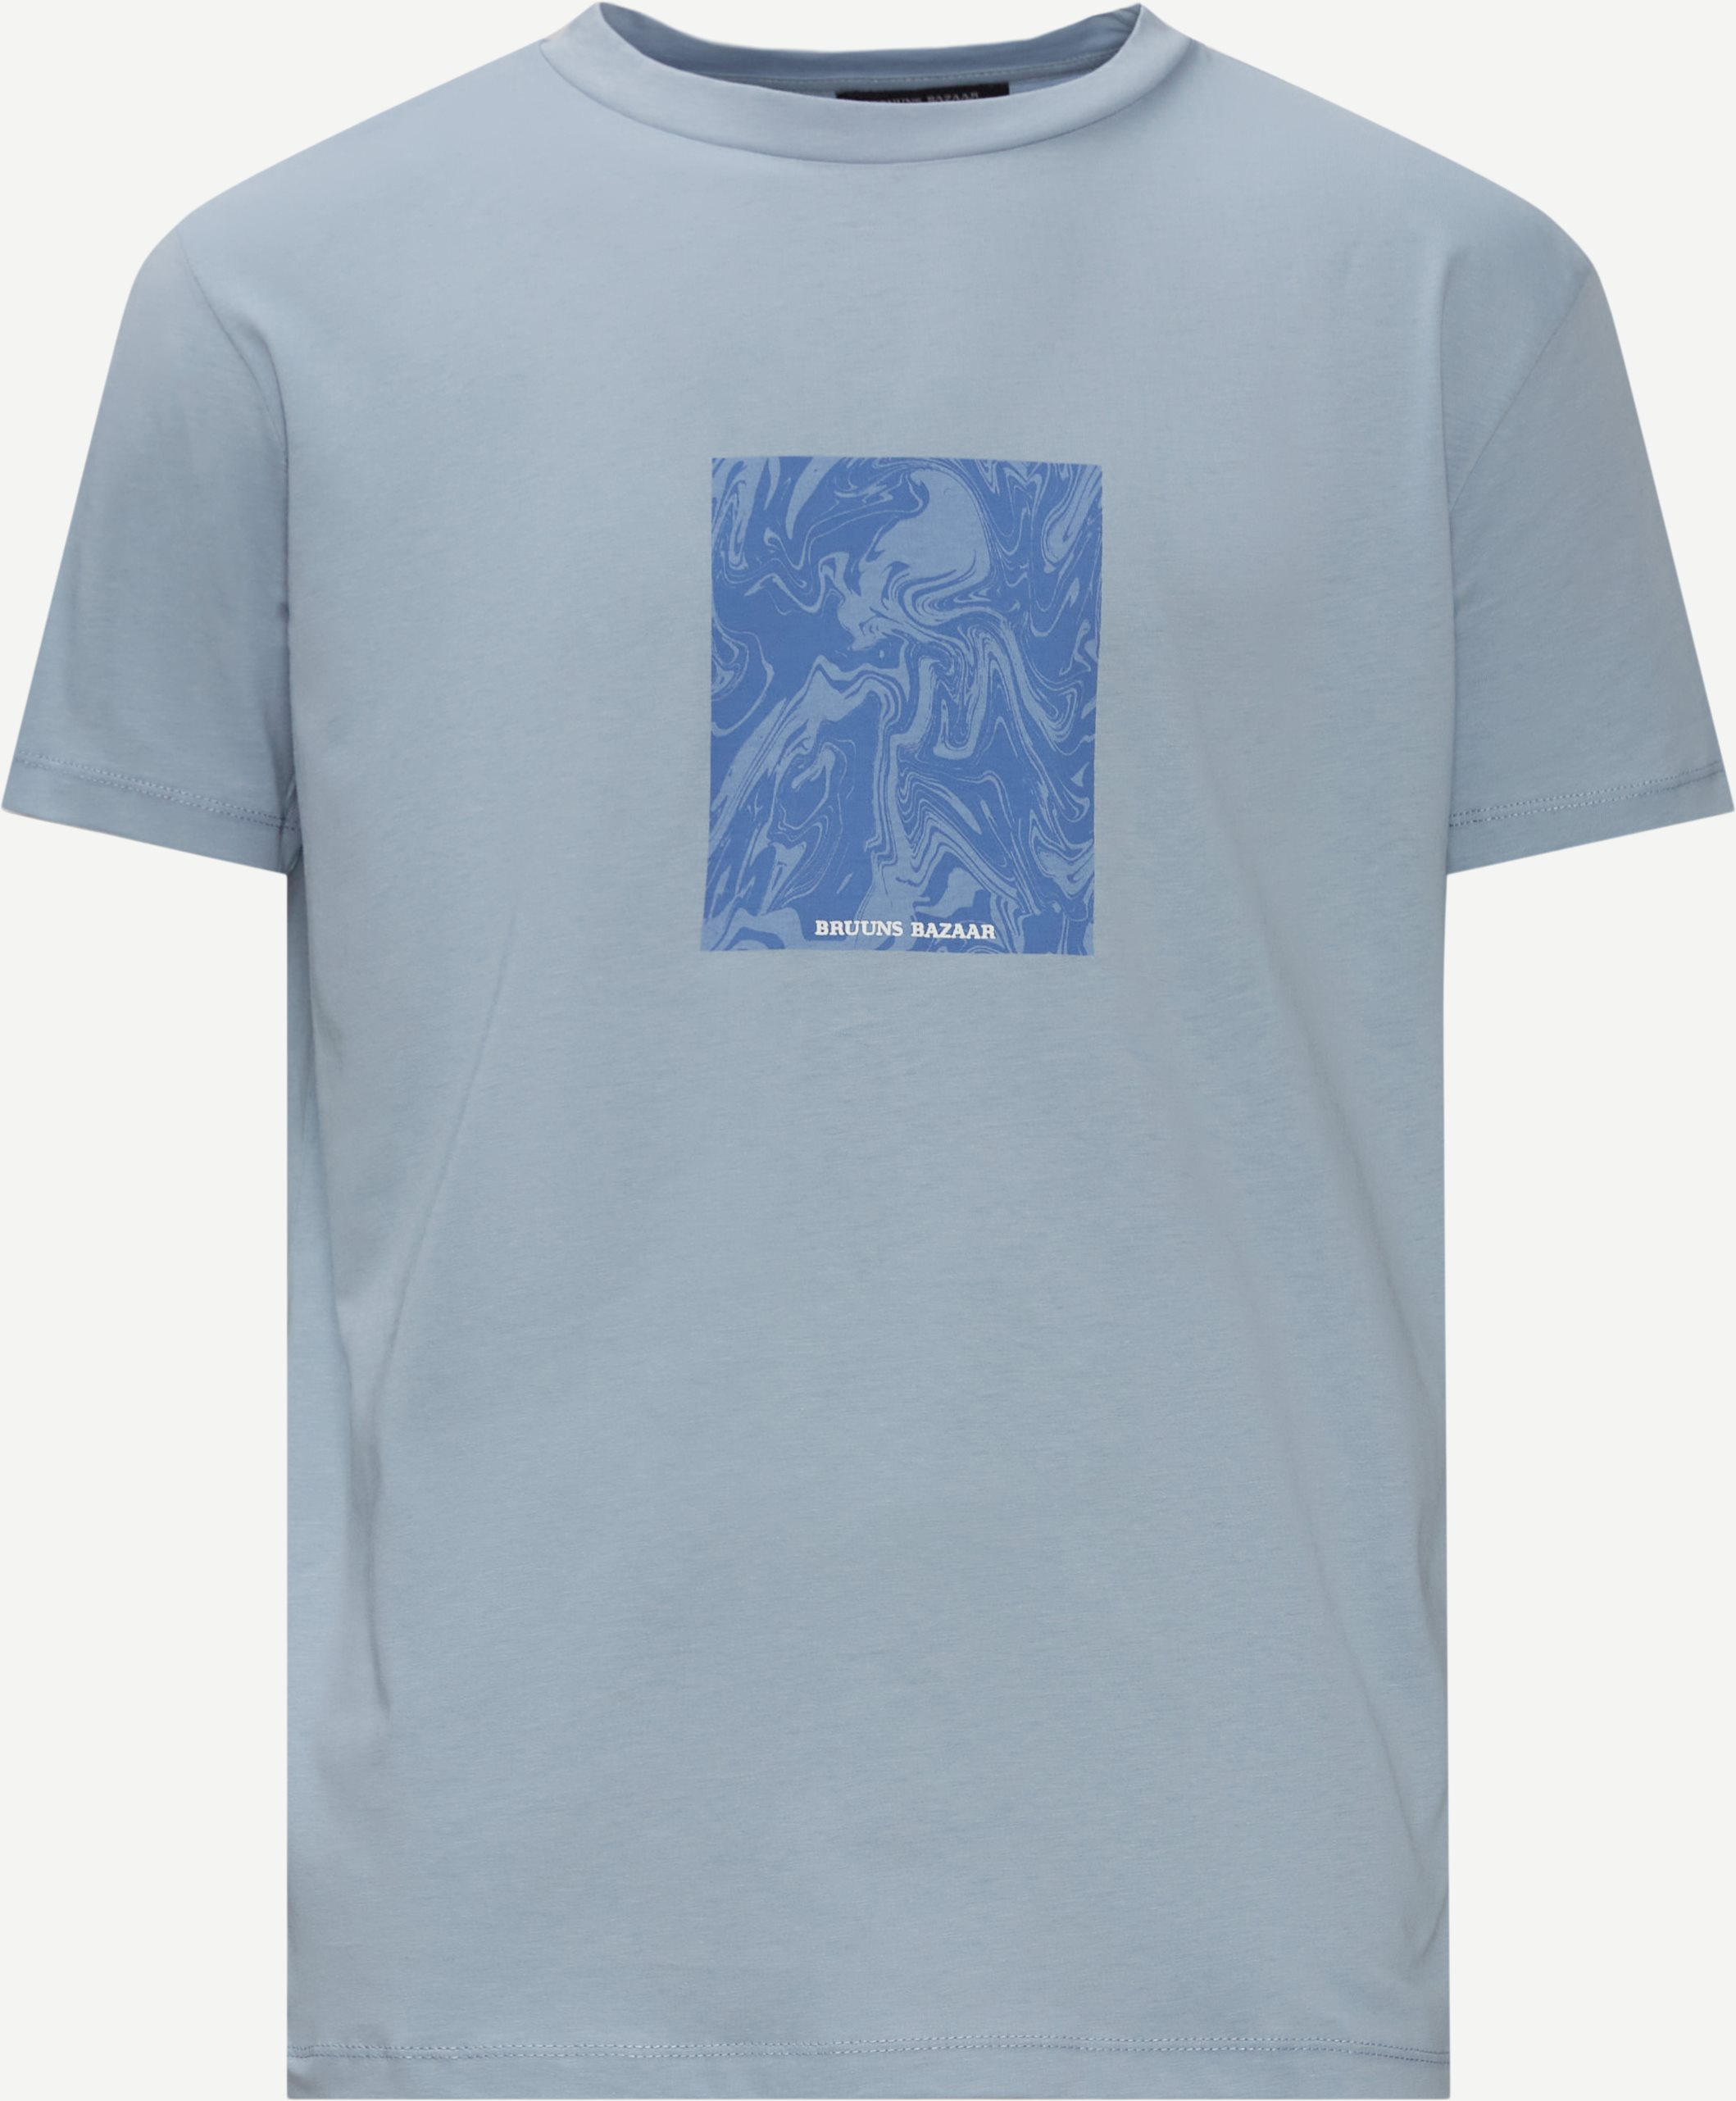 Gus Ice T-shirt - T-shirts - Regular fit - Blå